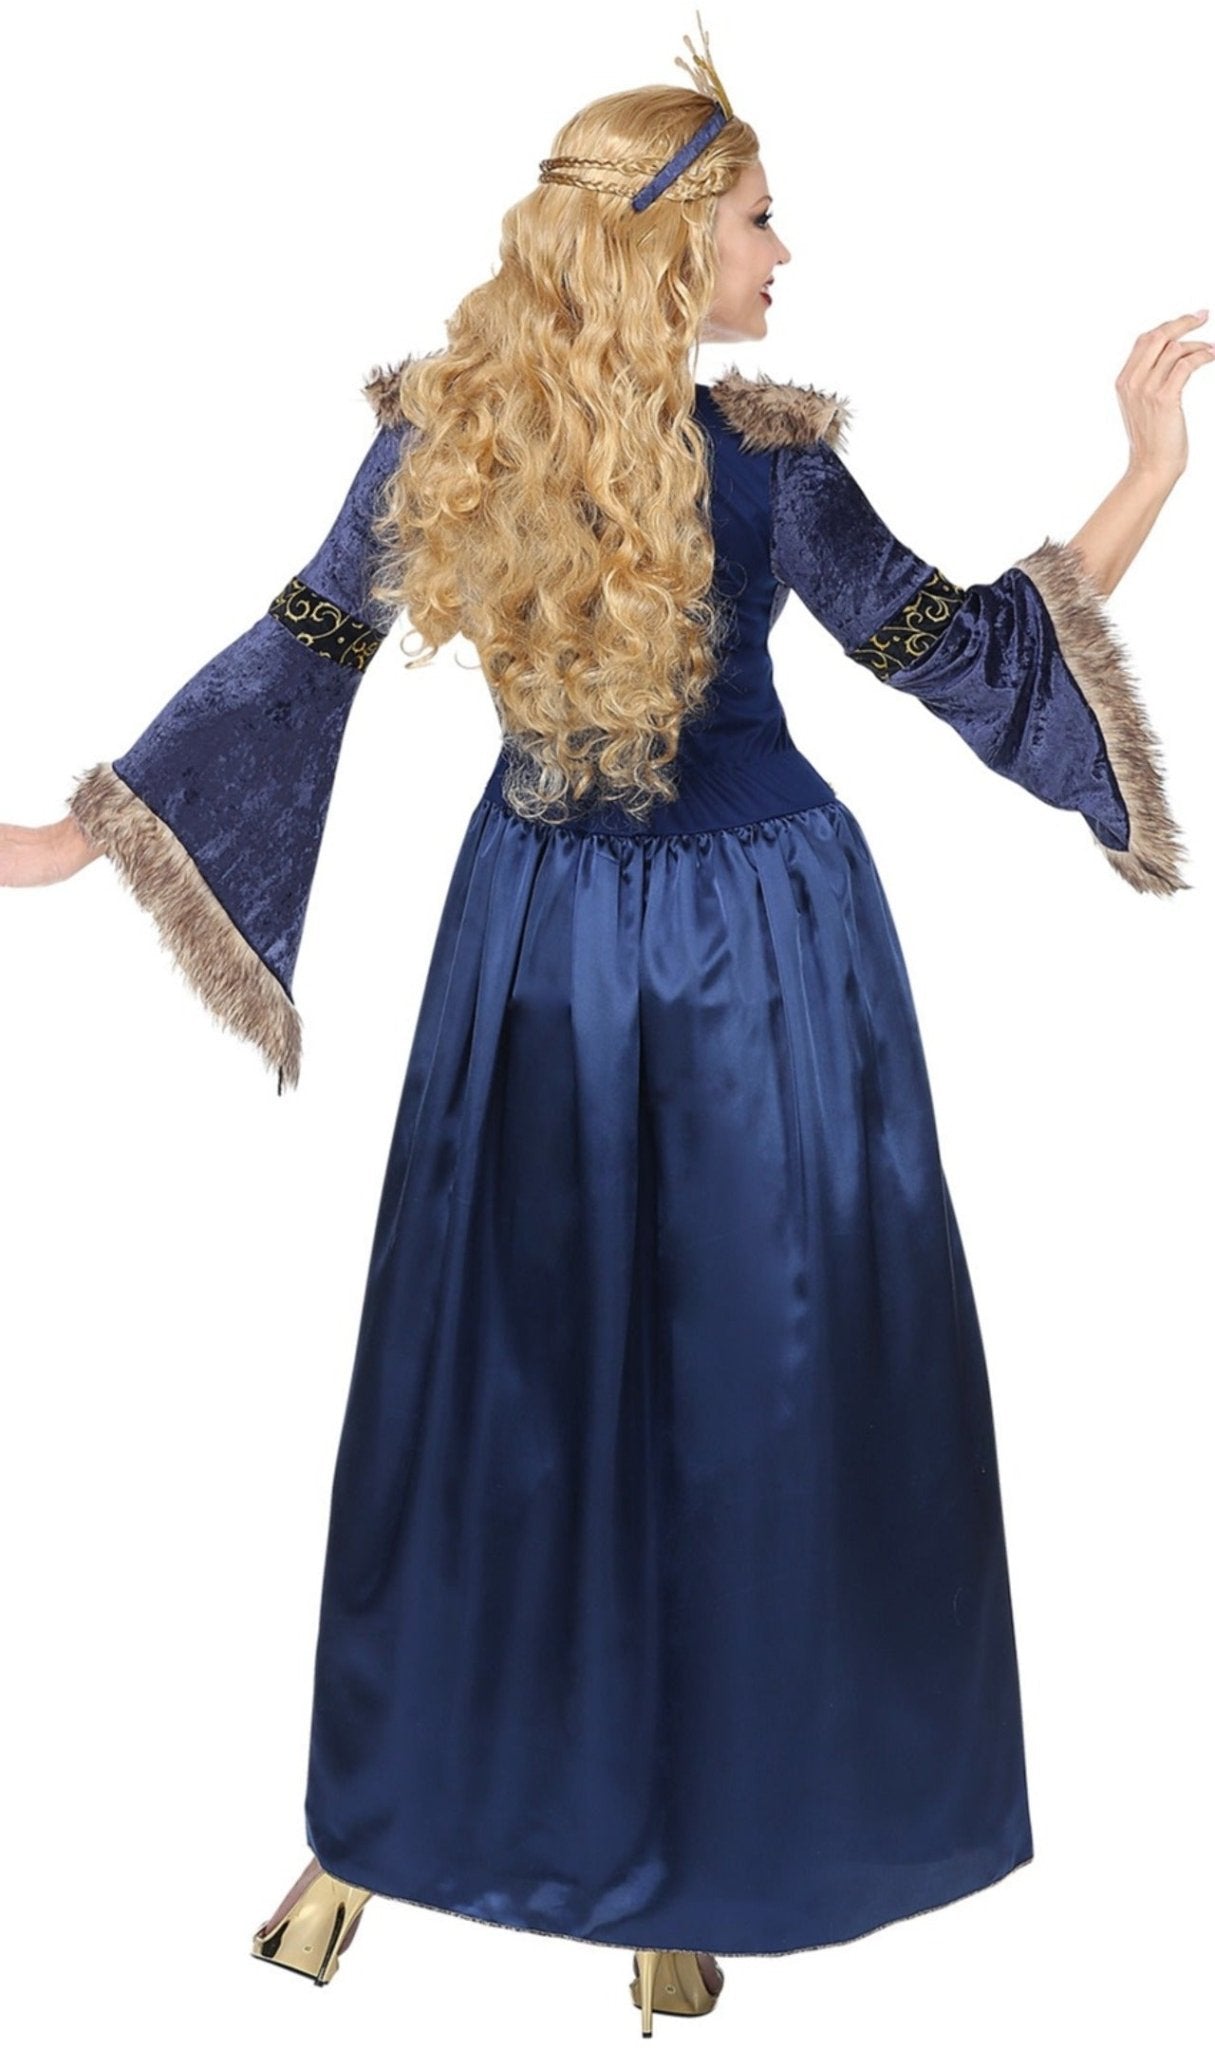 Vestido Medieval azul - Unha de Romanos